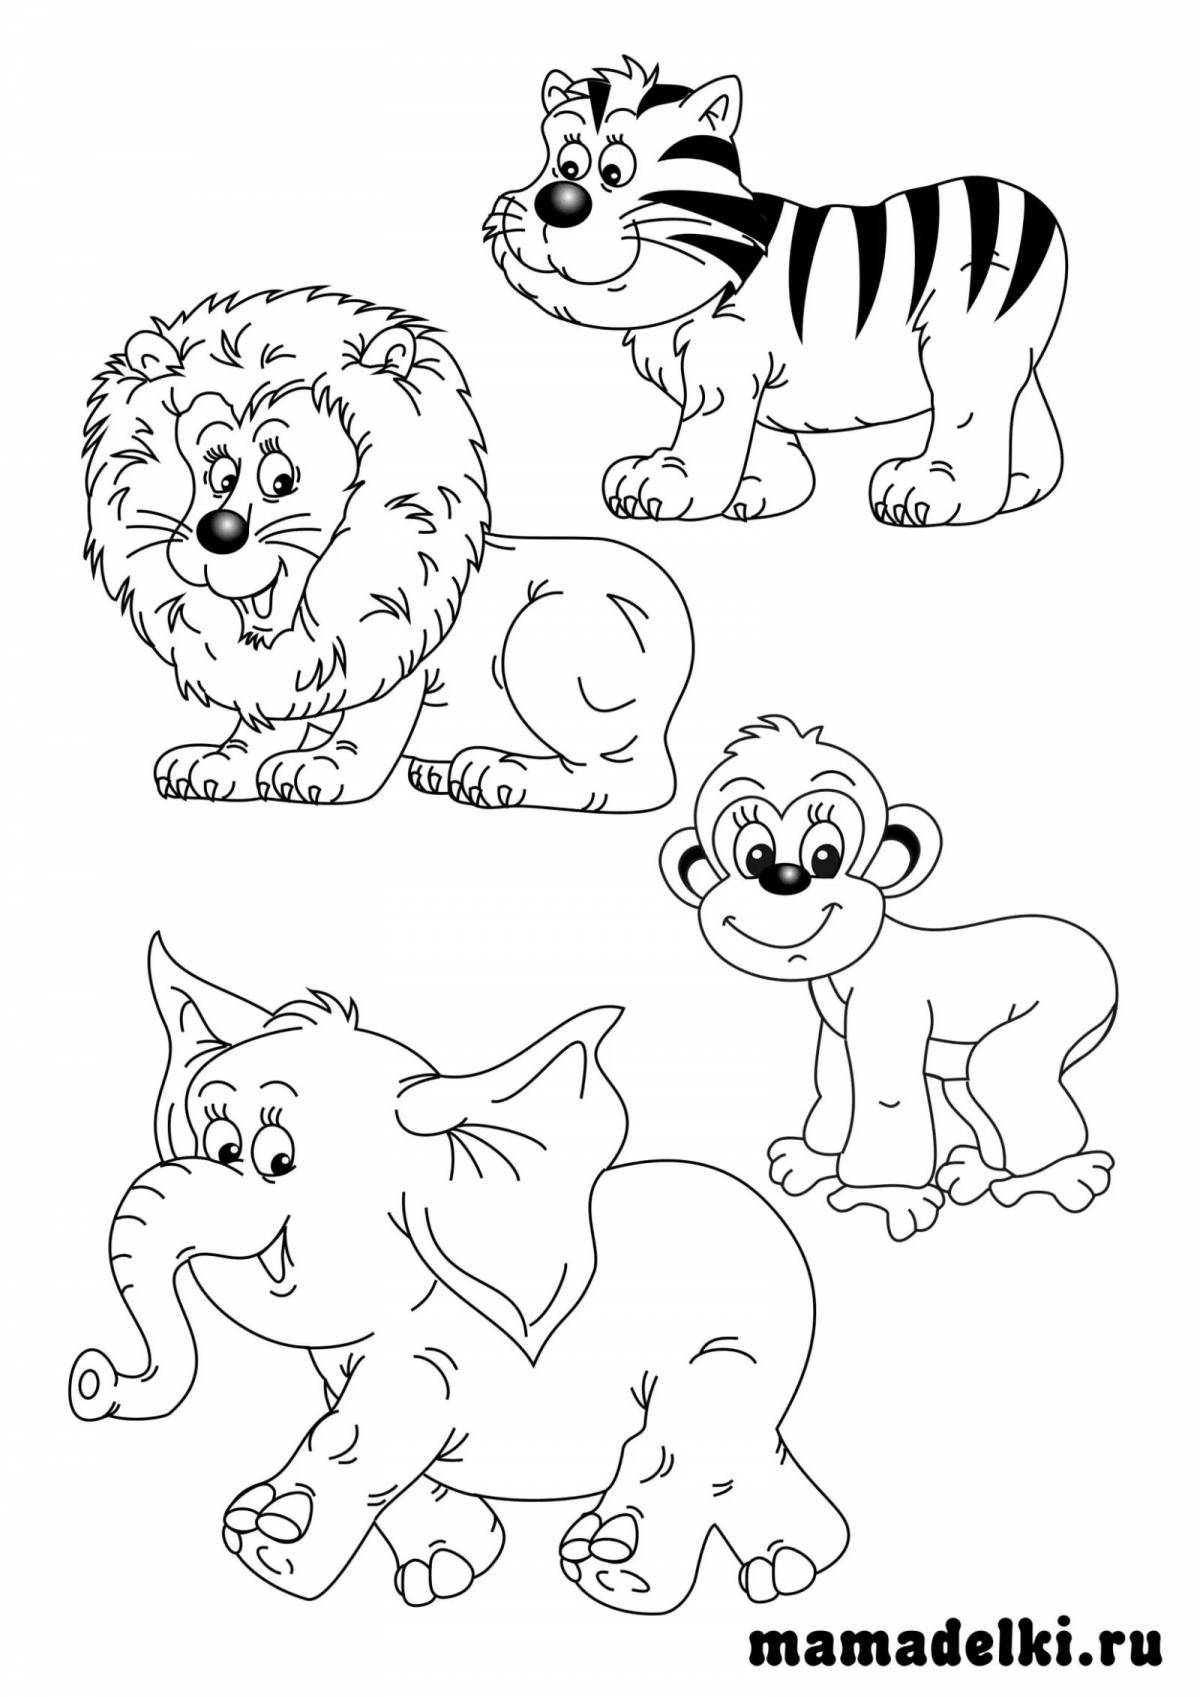 Игривая страница раскраски диких животных для детей 2-3 лет